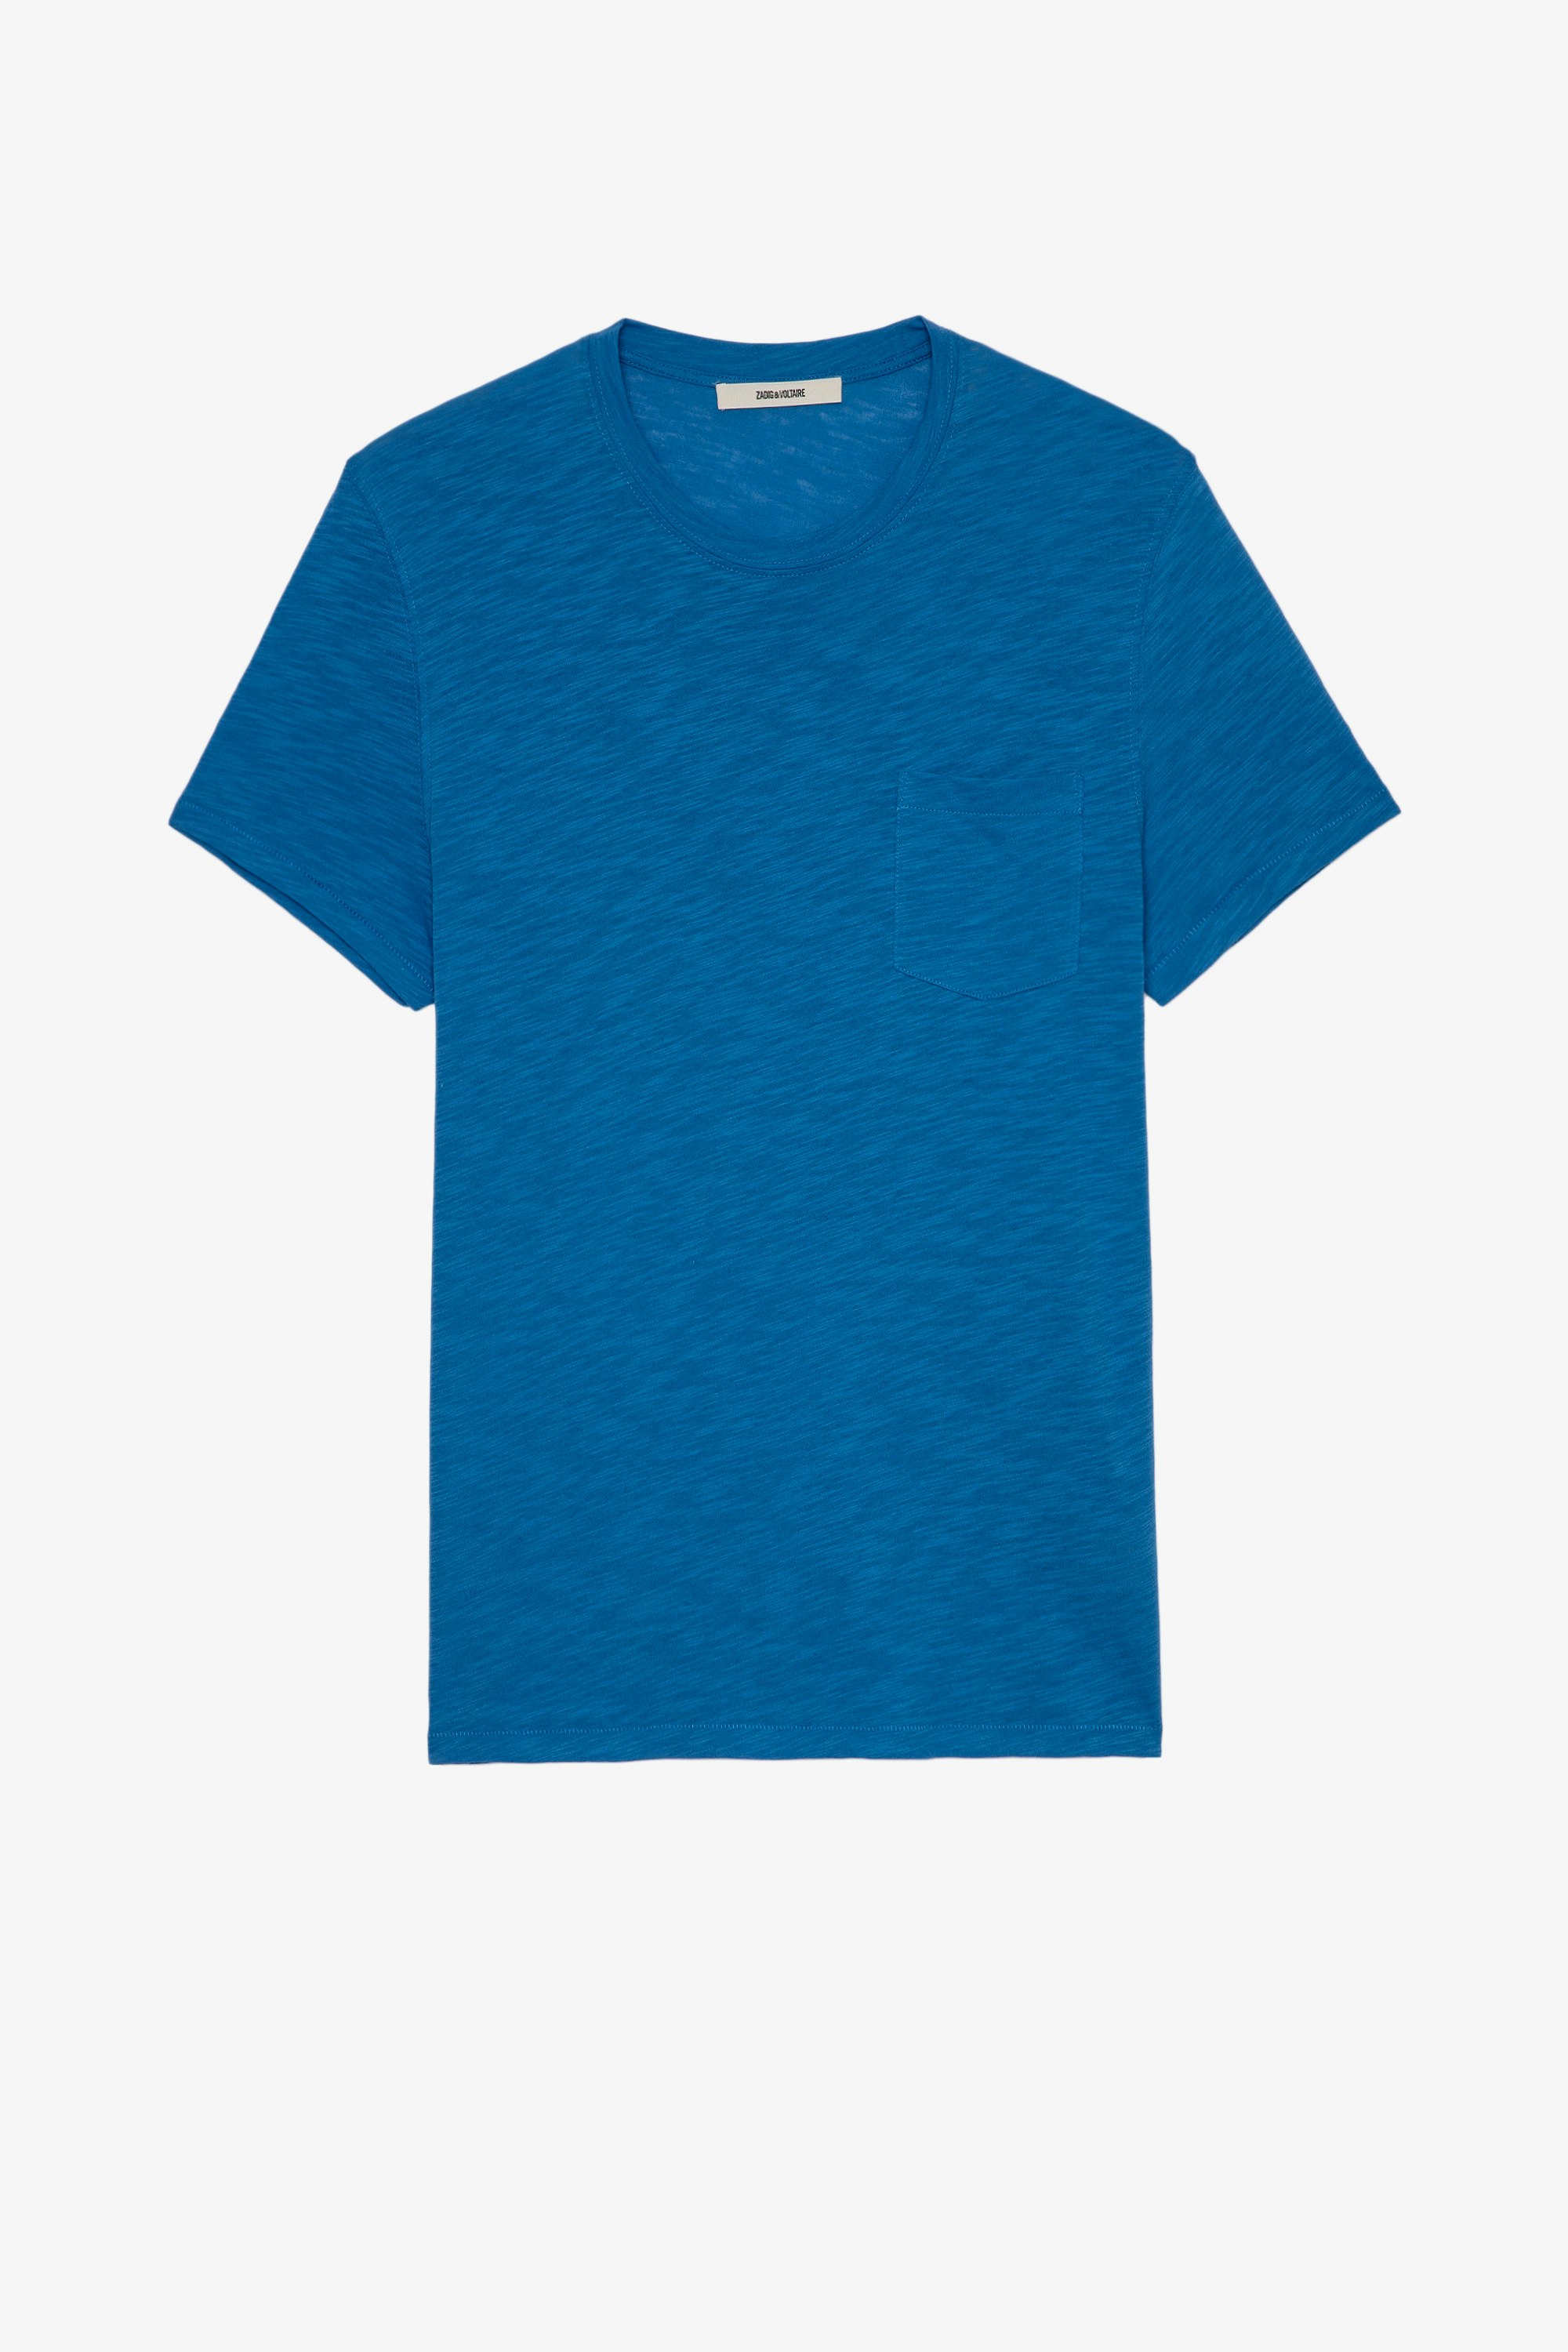 Camiseta Stockholm Flamme Camiseta azul de algodón con impresión de calavera para hombre